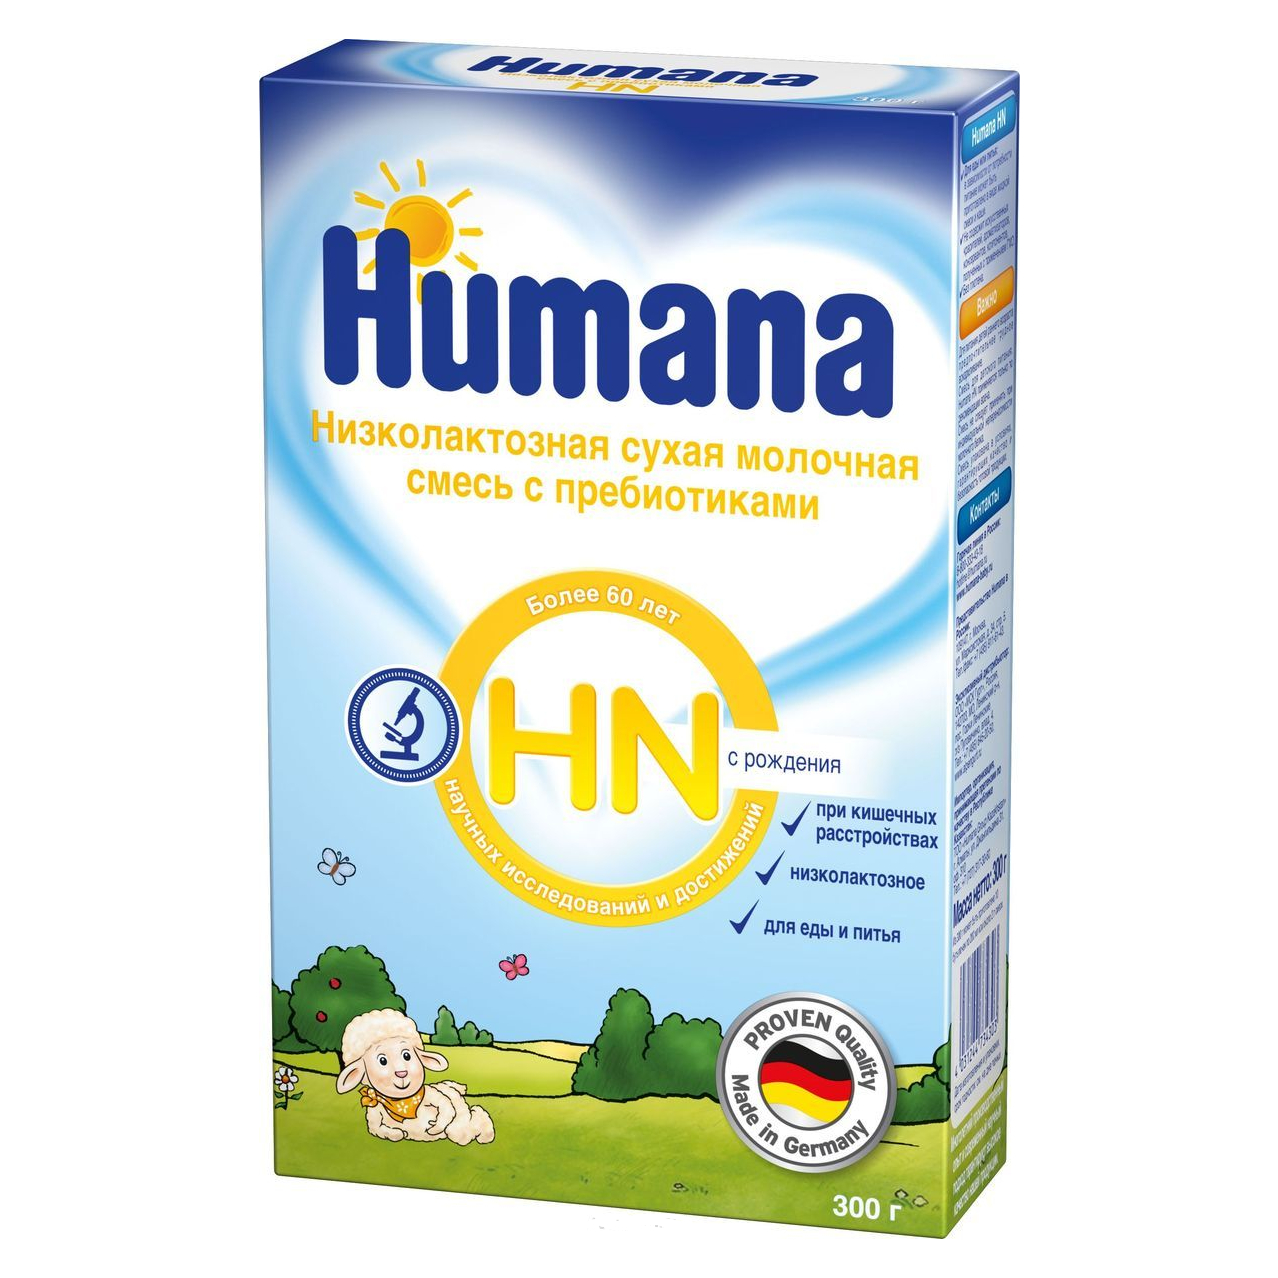 Низколактозная молочная смесь с пребиотиками ЛП (HN) с рождения - 300 г